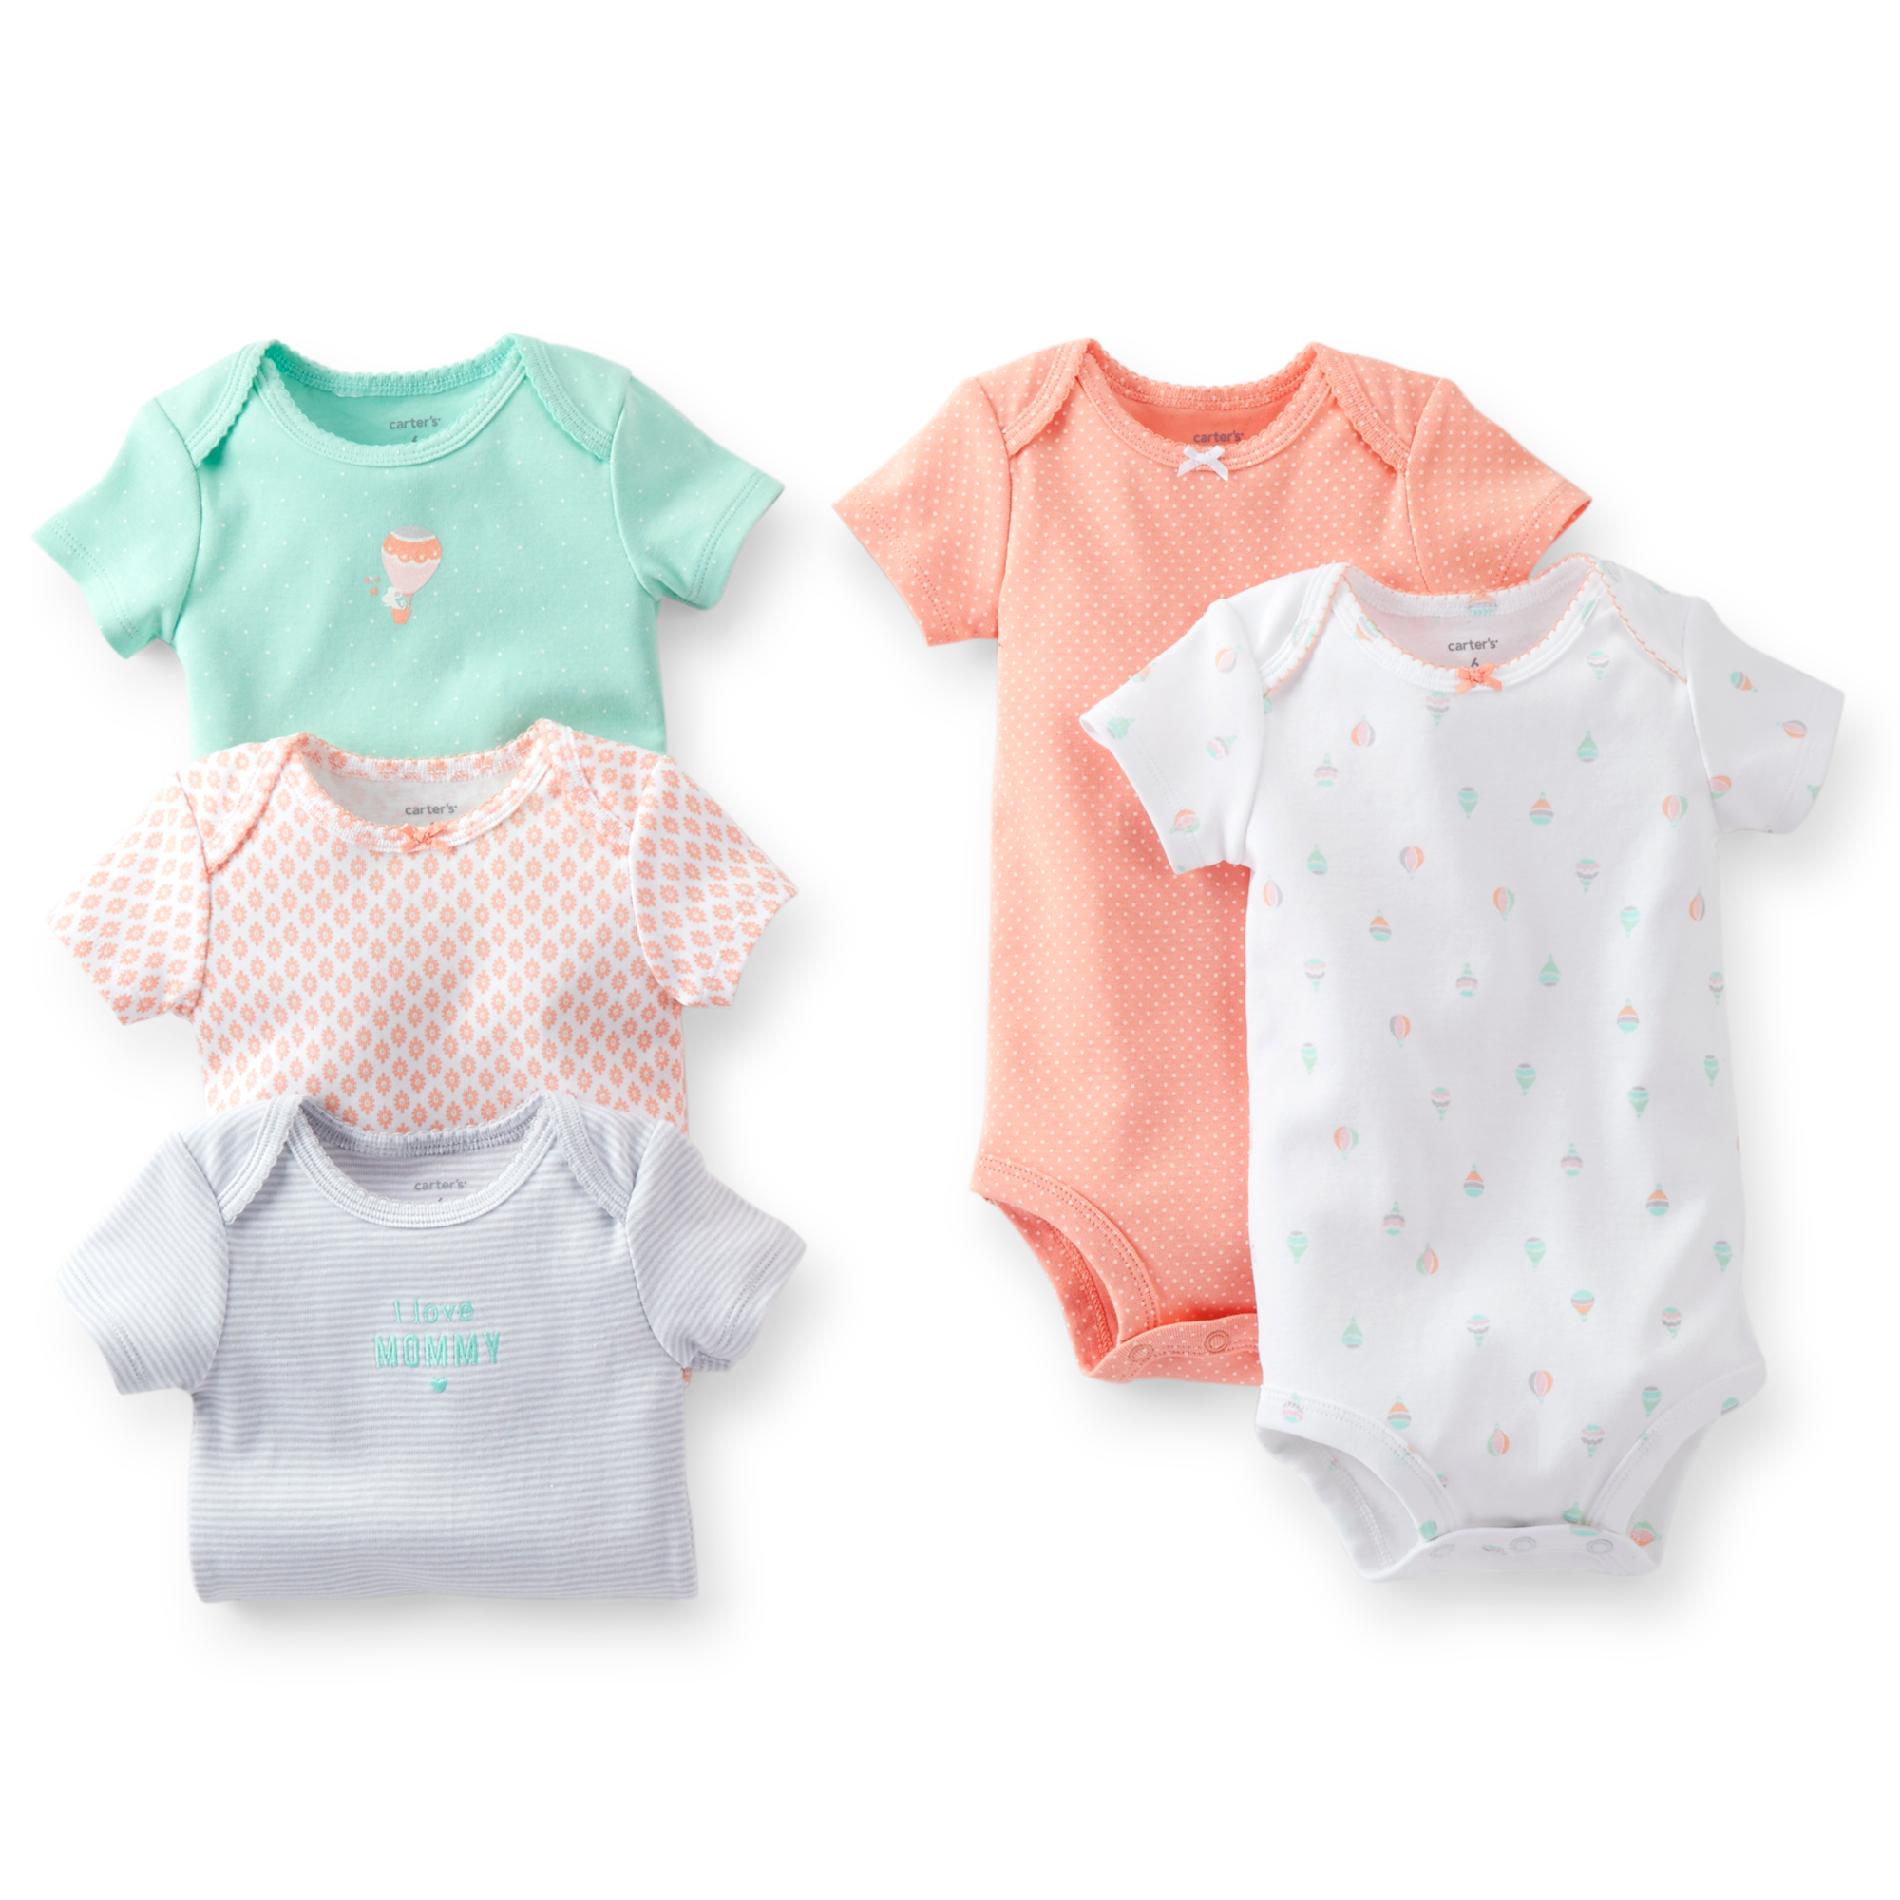 Carter's Newborn & Infant Girl's 5-pack 'I Love Mommy' Bodysuits